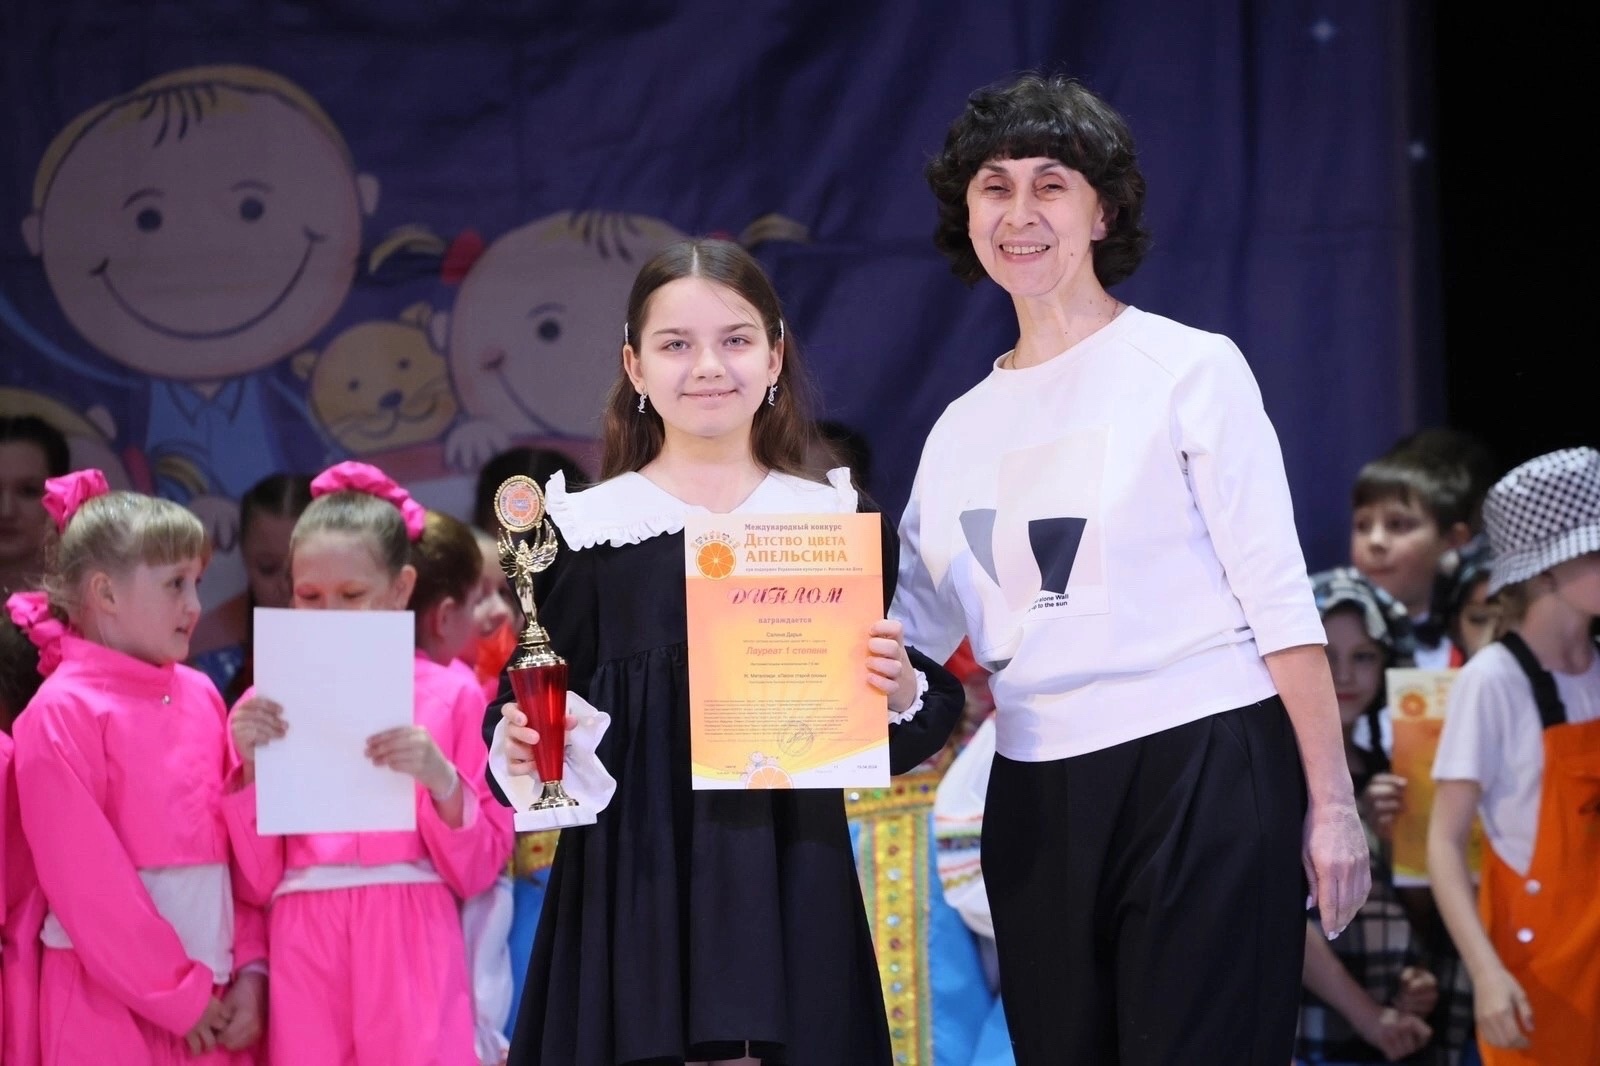 Ученица 3 «А» класса Дарья Салина, стала лауреатом I степени международном конкурсе &amp;quot;Детство цвета апельсина&amp;quot;, который состоялся 19 апреля в Доме работников искусств..